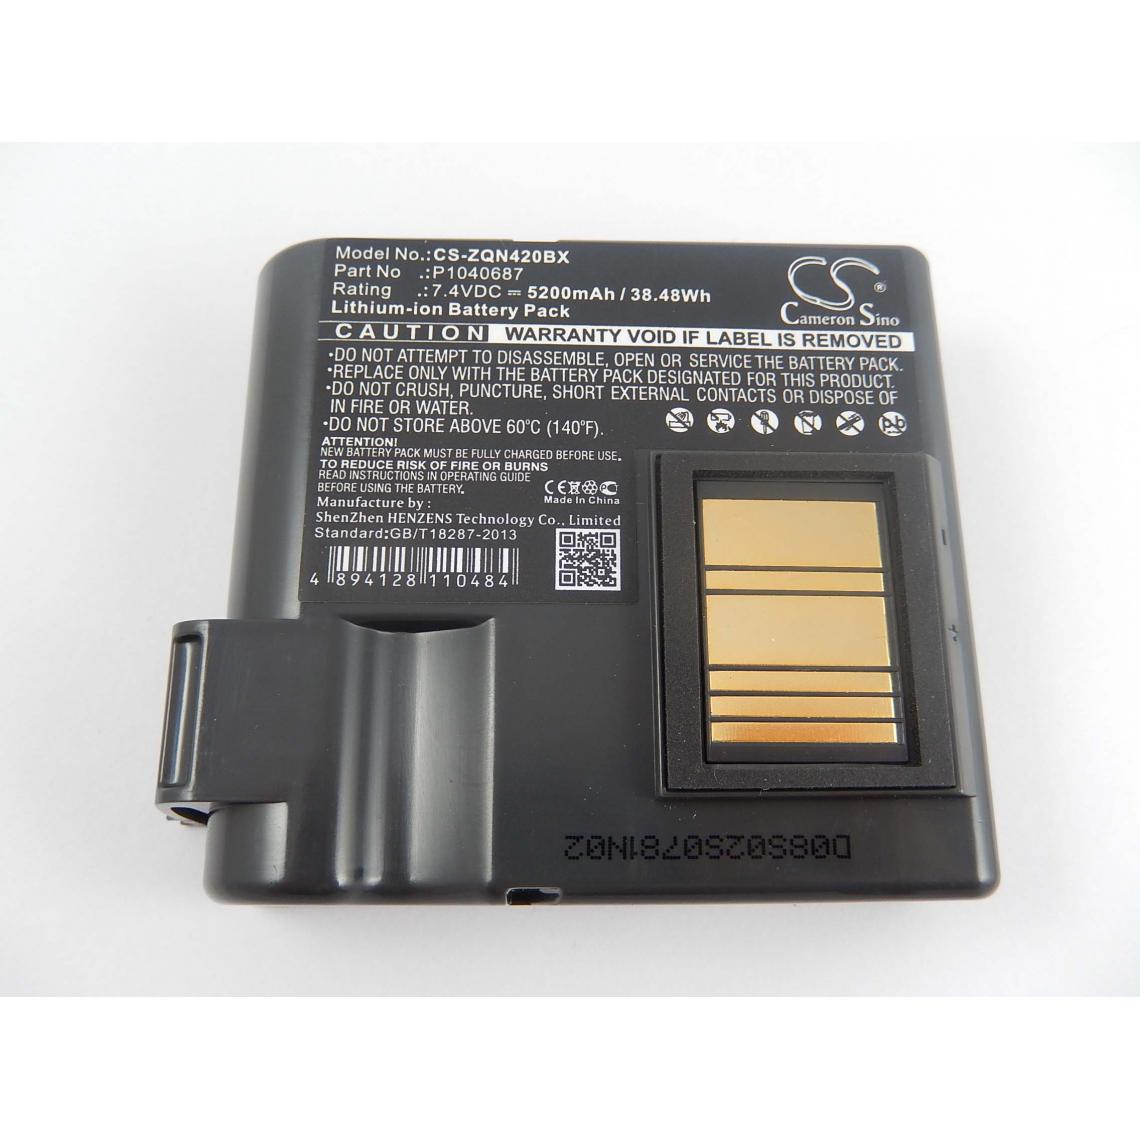 Vhbw - vhbw Batterie Li-Ion 5200 mAh (7.4 V) compatible avec imprimante d'étiquettes Zebra QLN420 remplacement pour P1040687, P1050667-016. - Imprimante Jet d'encre